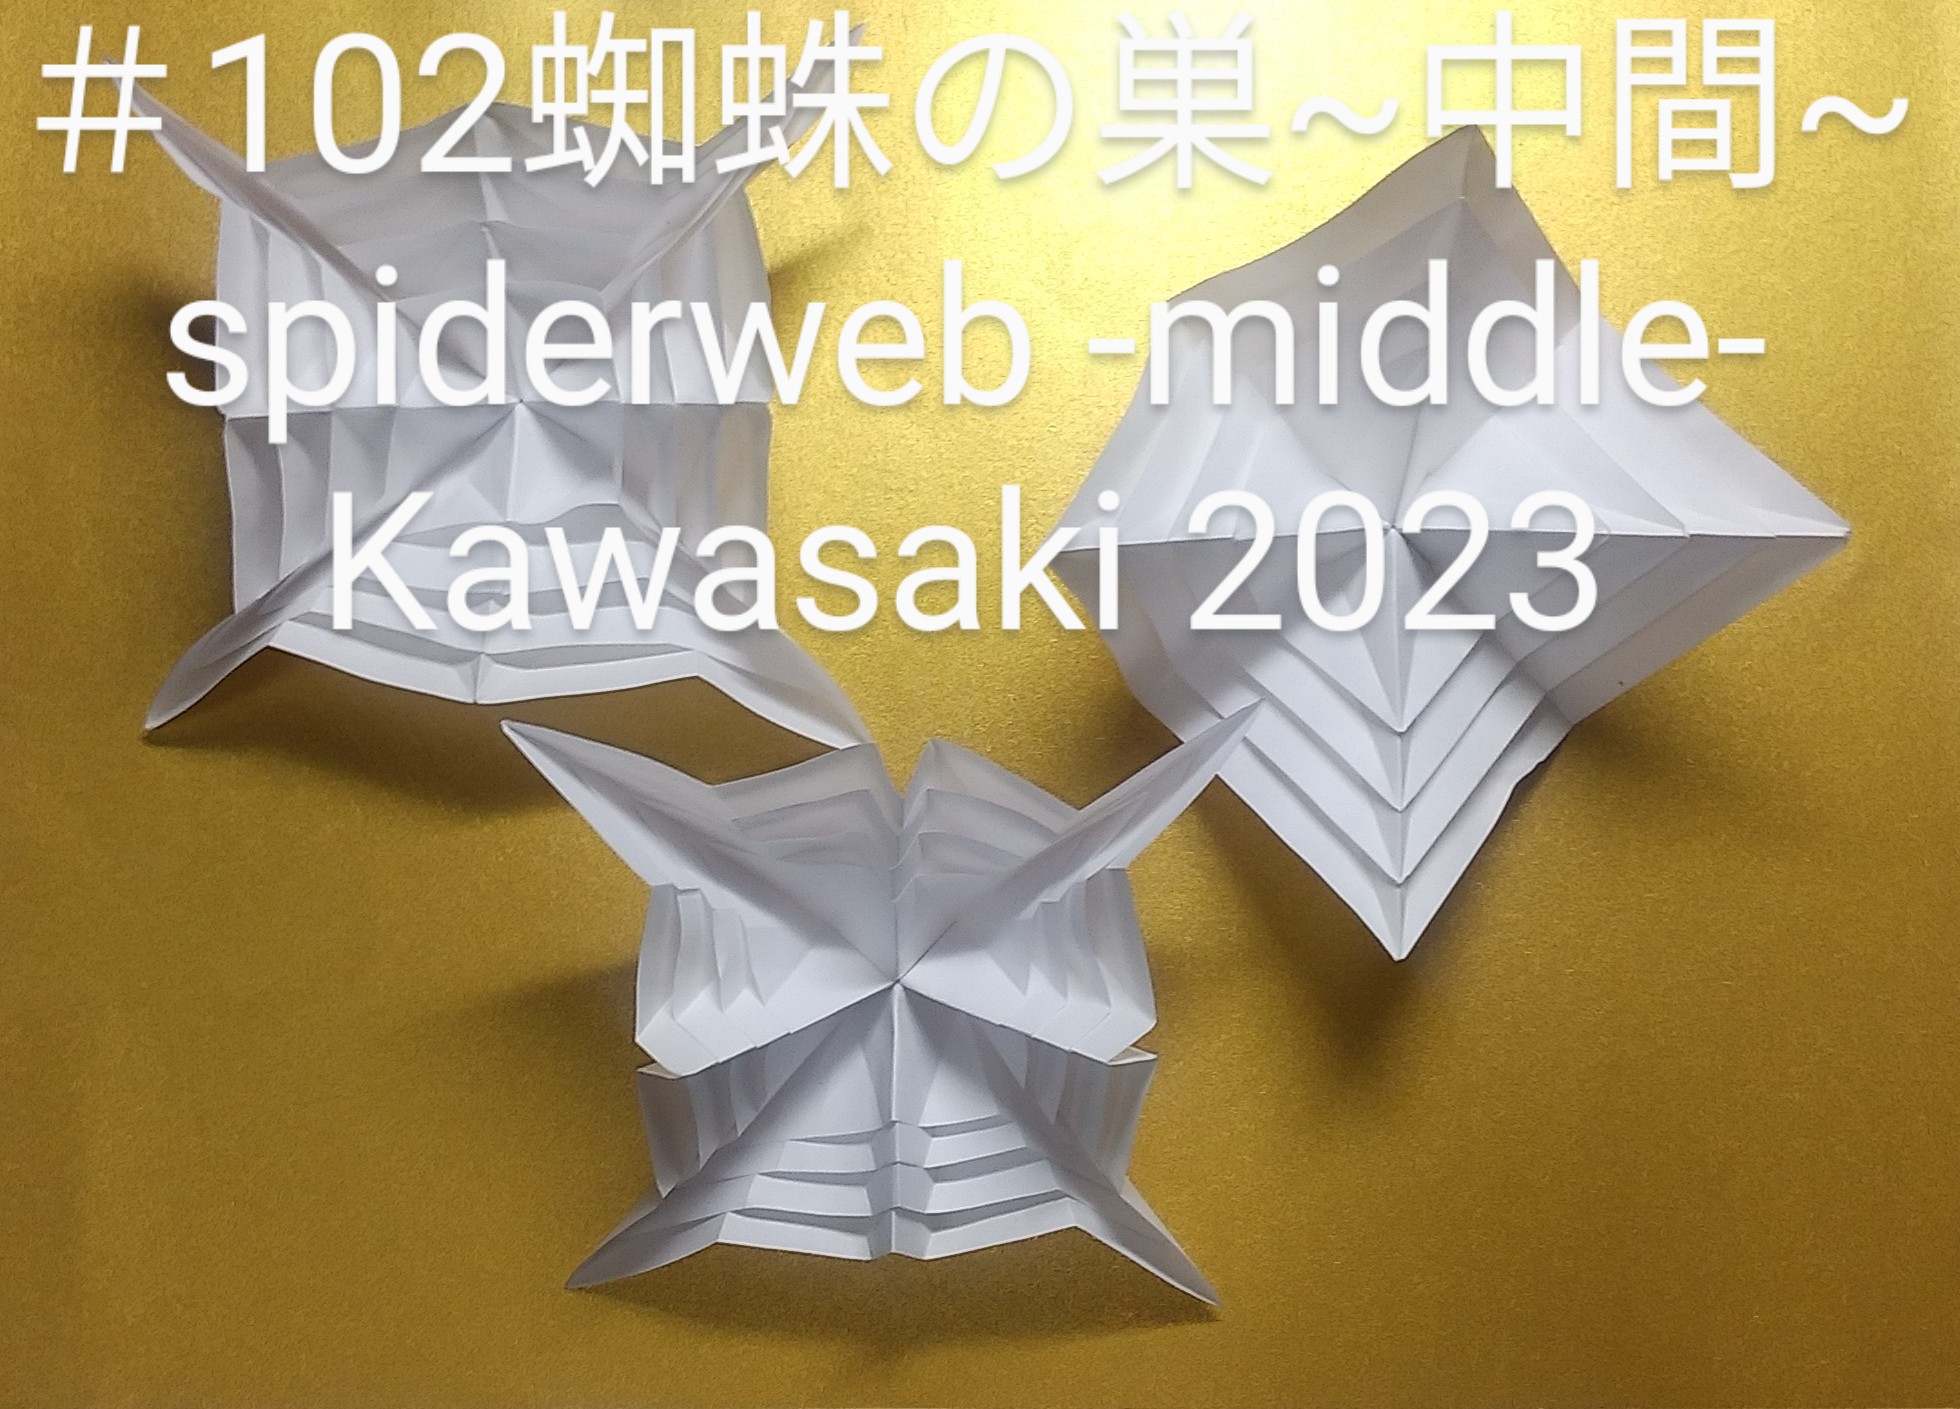 2023/10/22(Sun) 17:37「＃102蜘蛛の巣~中間~ spiderweb -middle-（2023年10月22日17:12）」川崎敏和 T.Kawasaki
（創作者 Author：川崎敏和 T.Kawasaki,　製作者 Folder：川崎敏和 T.Kawasaki ,　出典 Source：2023年川崎敏和折り紙キット＃102）
 目安がある折りからなる＃100（左奥）と＃101（右奥）の、目安のある中間です。